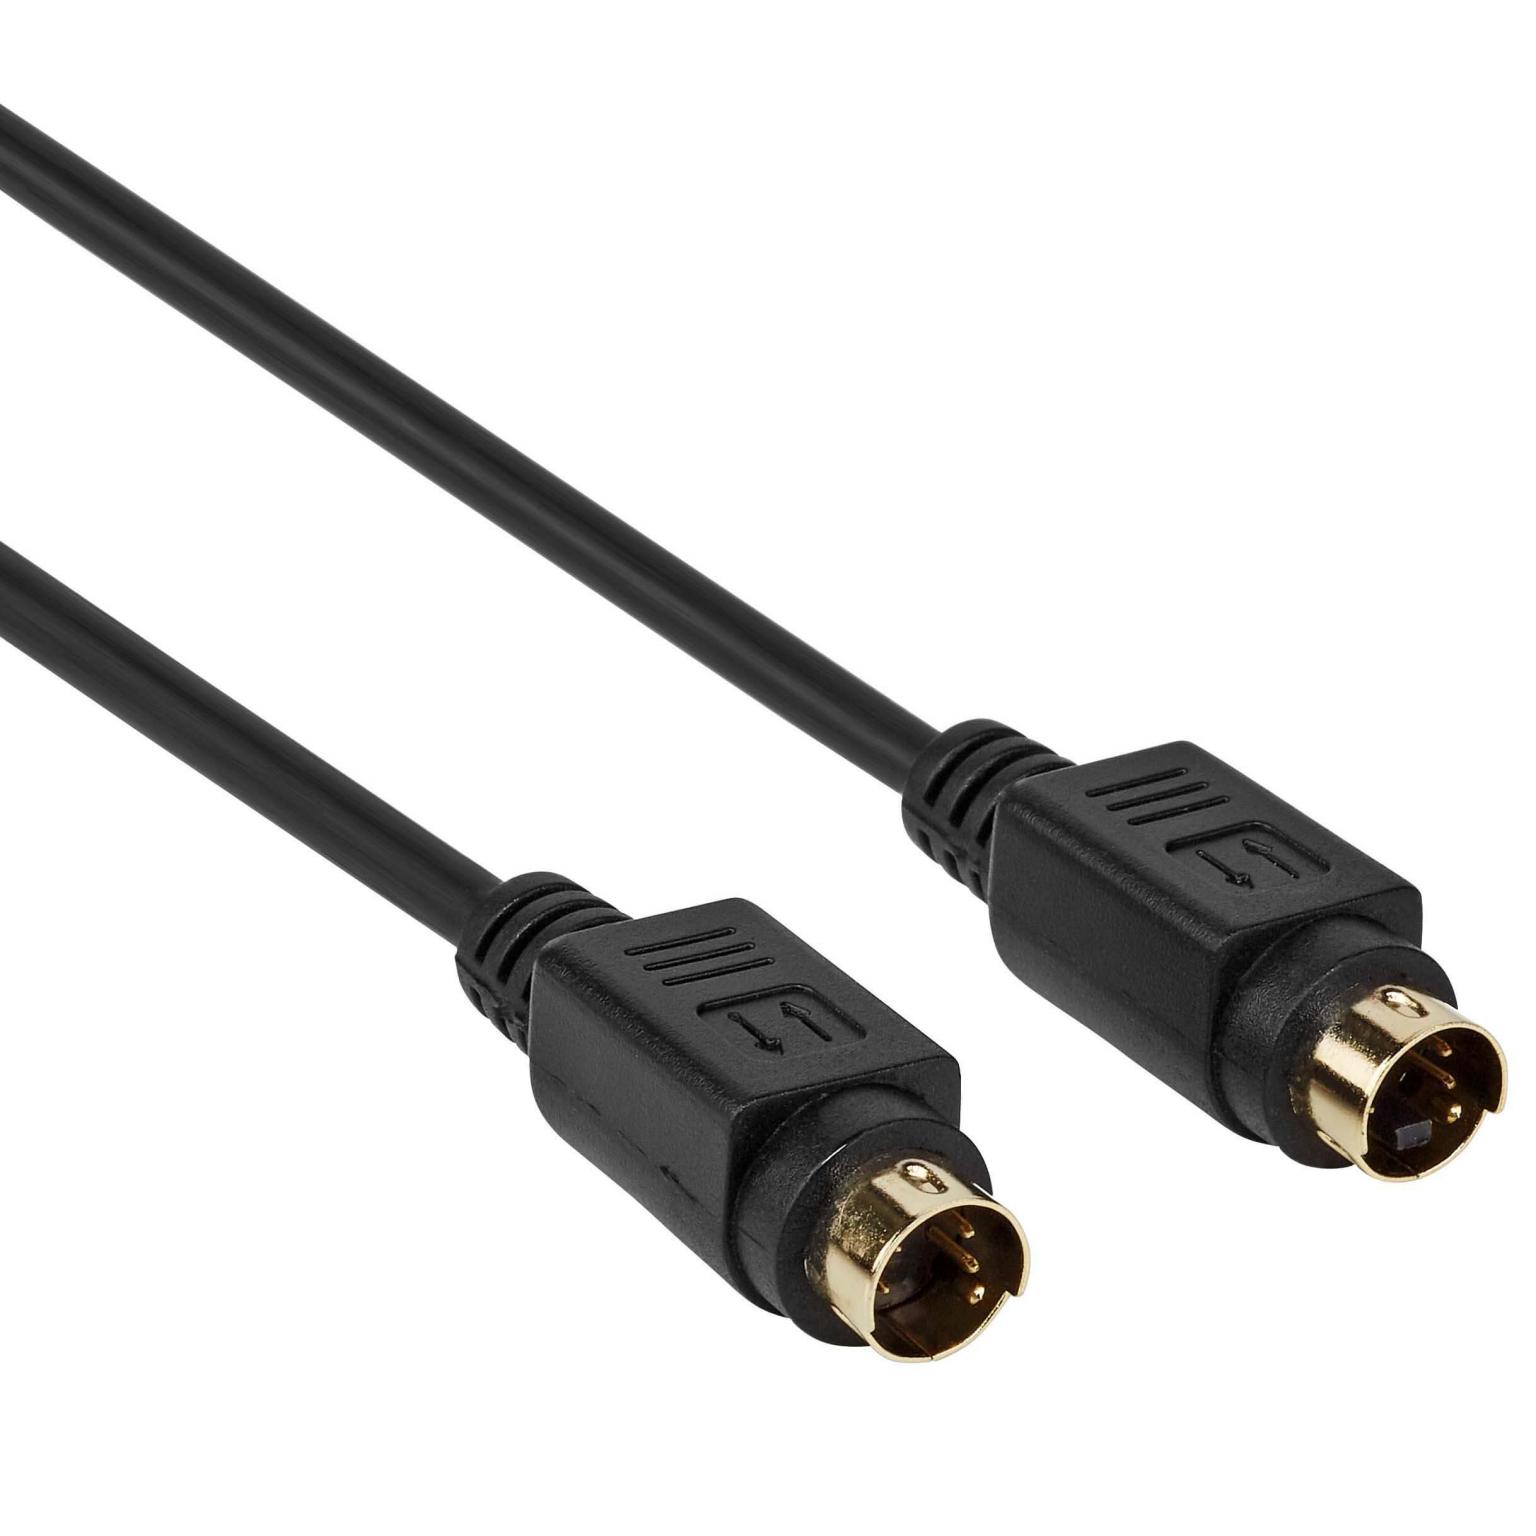 Aan het liegen Bevestigen Geavanceerde S-Video Kabel - S-Video kabel (S-VHS), Connector 1: S-Video Male, Connector  2: S-Video Male, Verguld - niet afgeschermd,2.5 Meter.